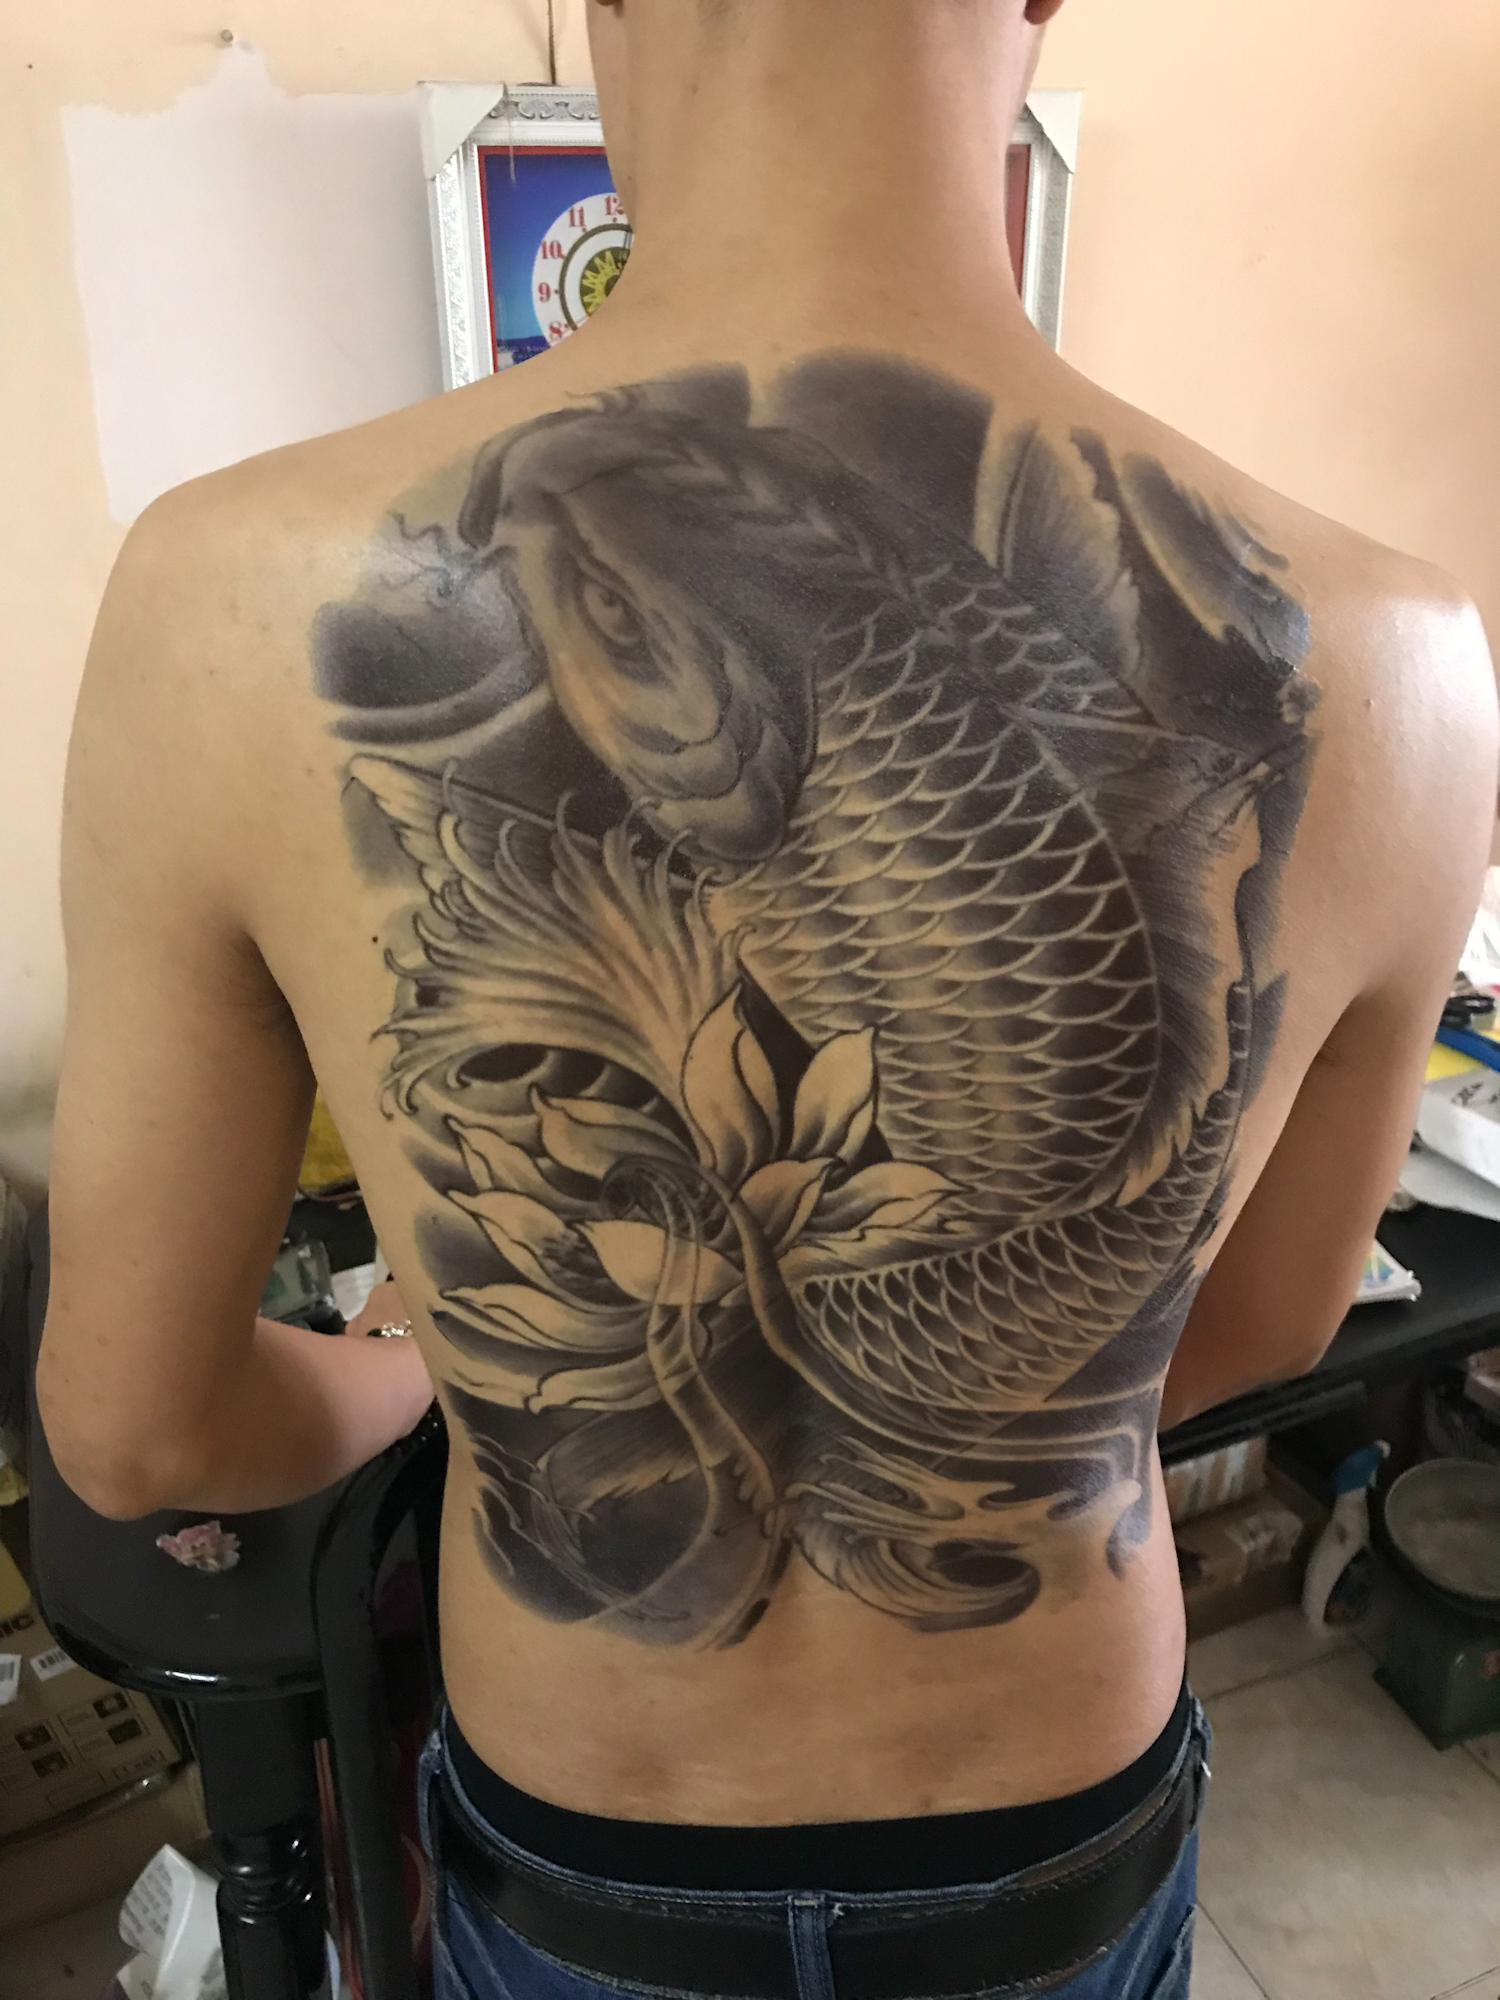 KaoKao  HCMHình xăm dán tattoo kín lưng cá chép trắng đen 34x48cm tặng  bắp tay xinh 15x21cm